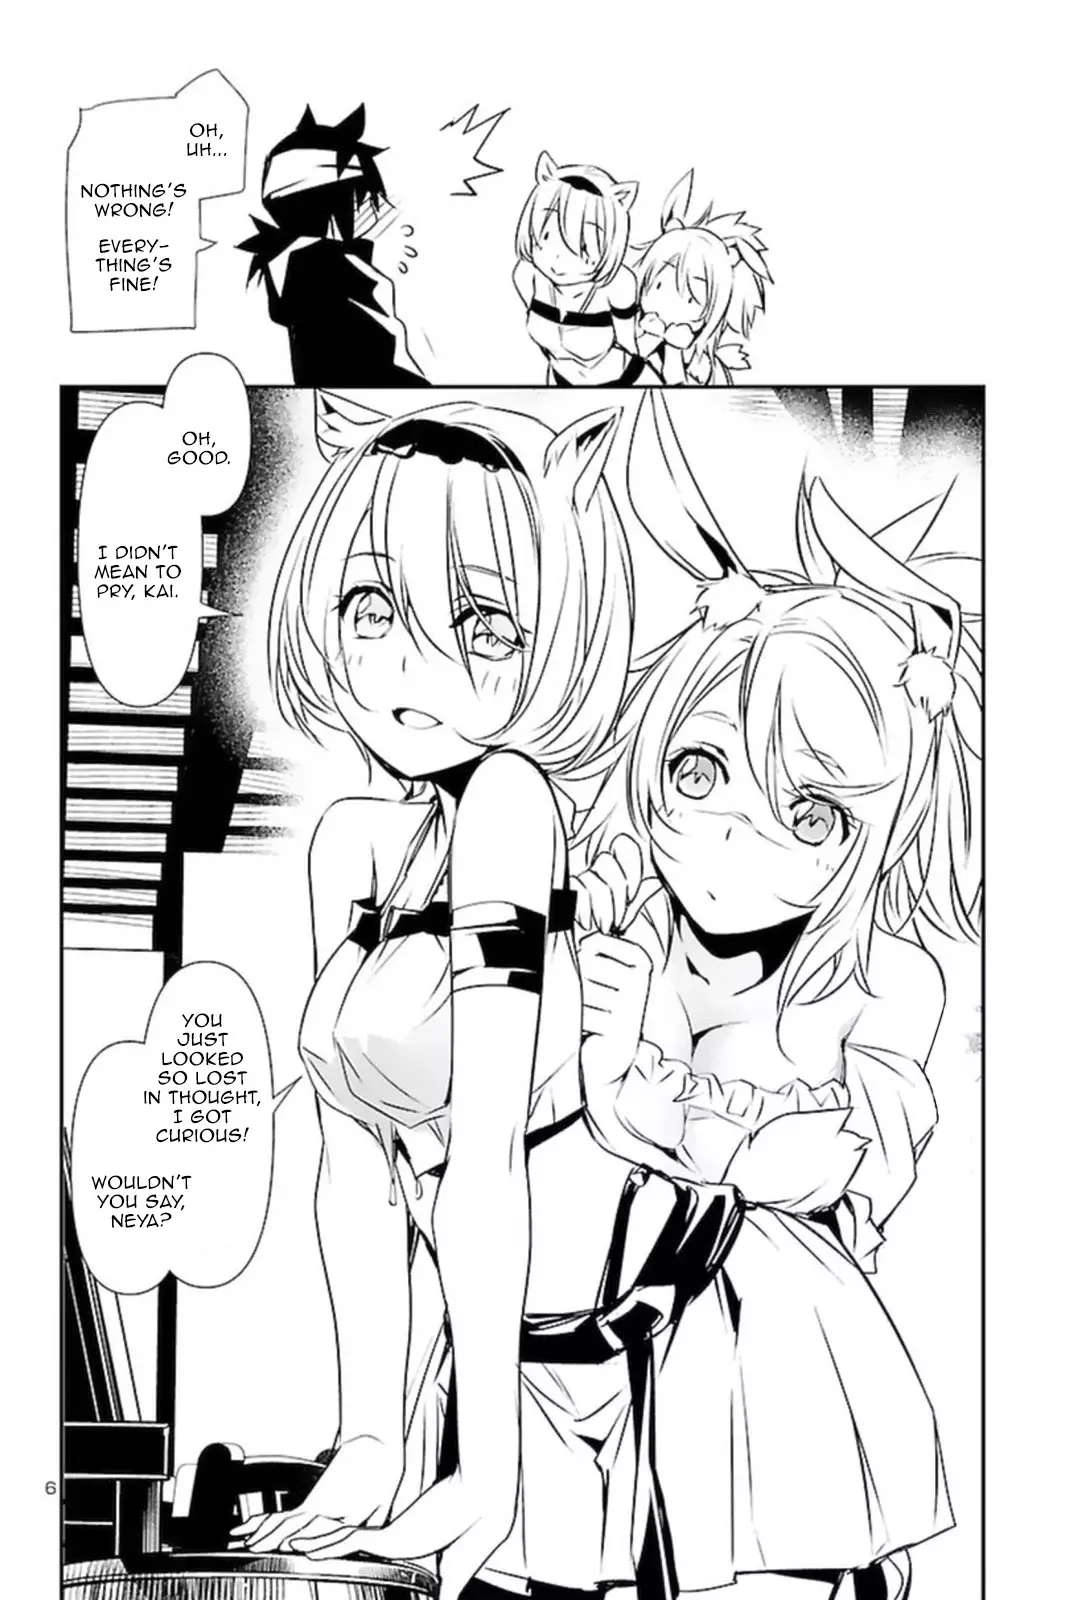 Shinju no Nectar - 56 page 5